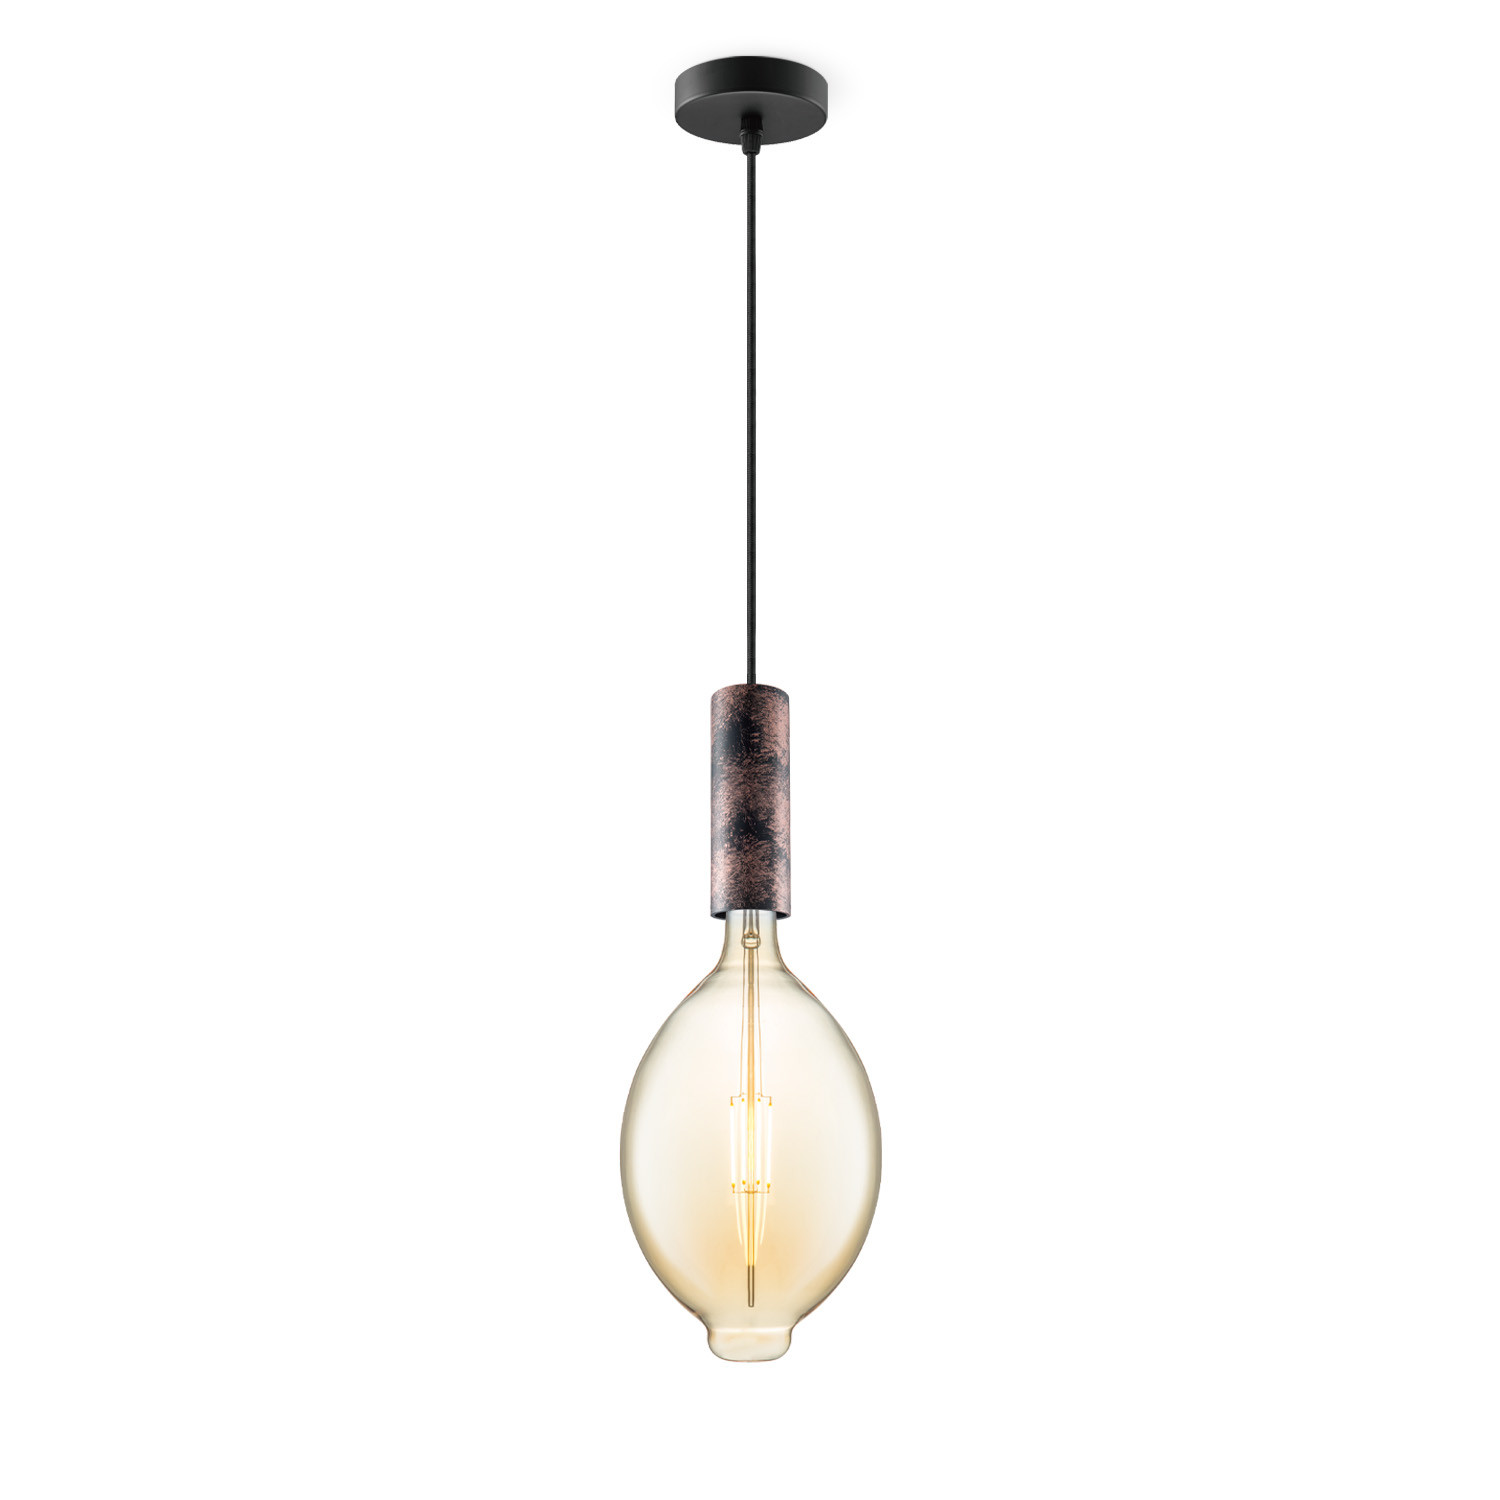 Light depot - hanglamp Saga roest Oval - amber - Outlet